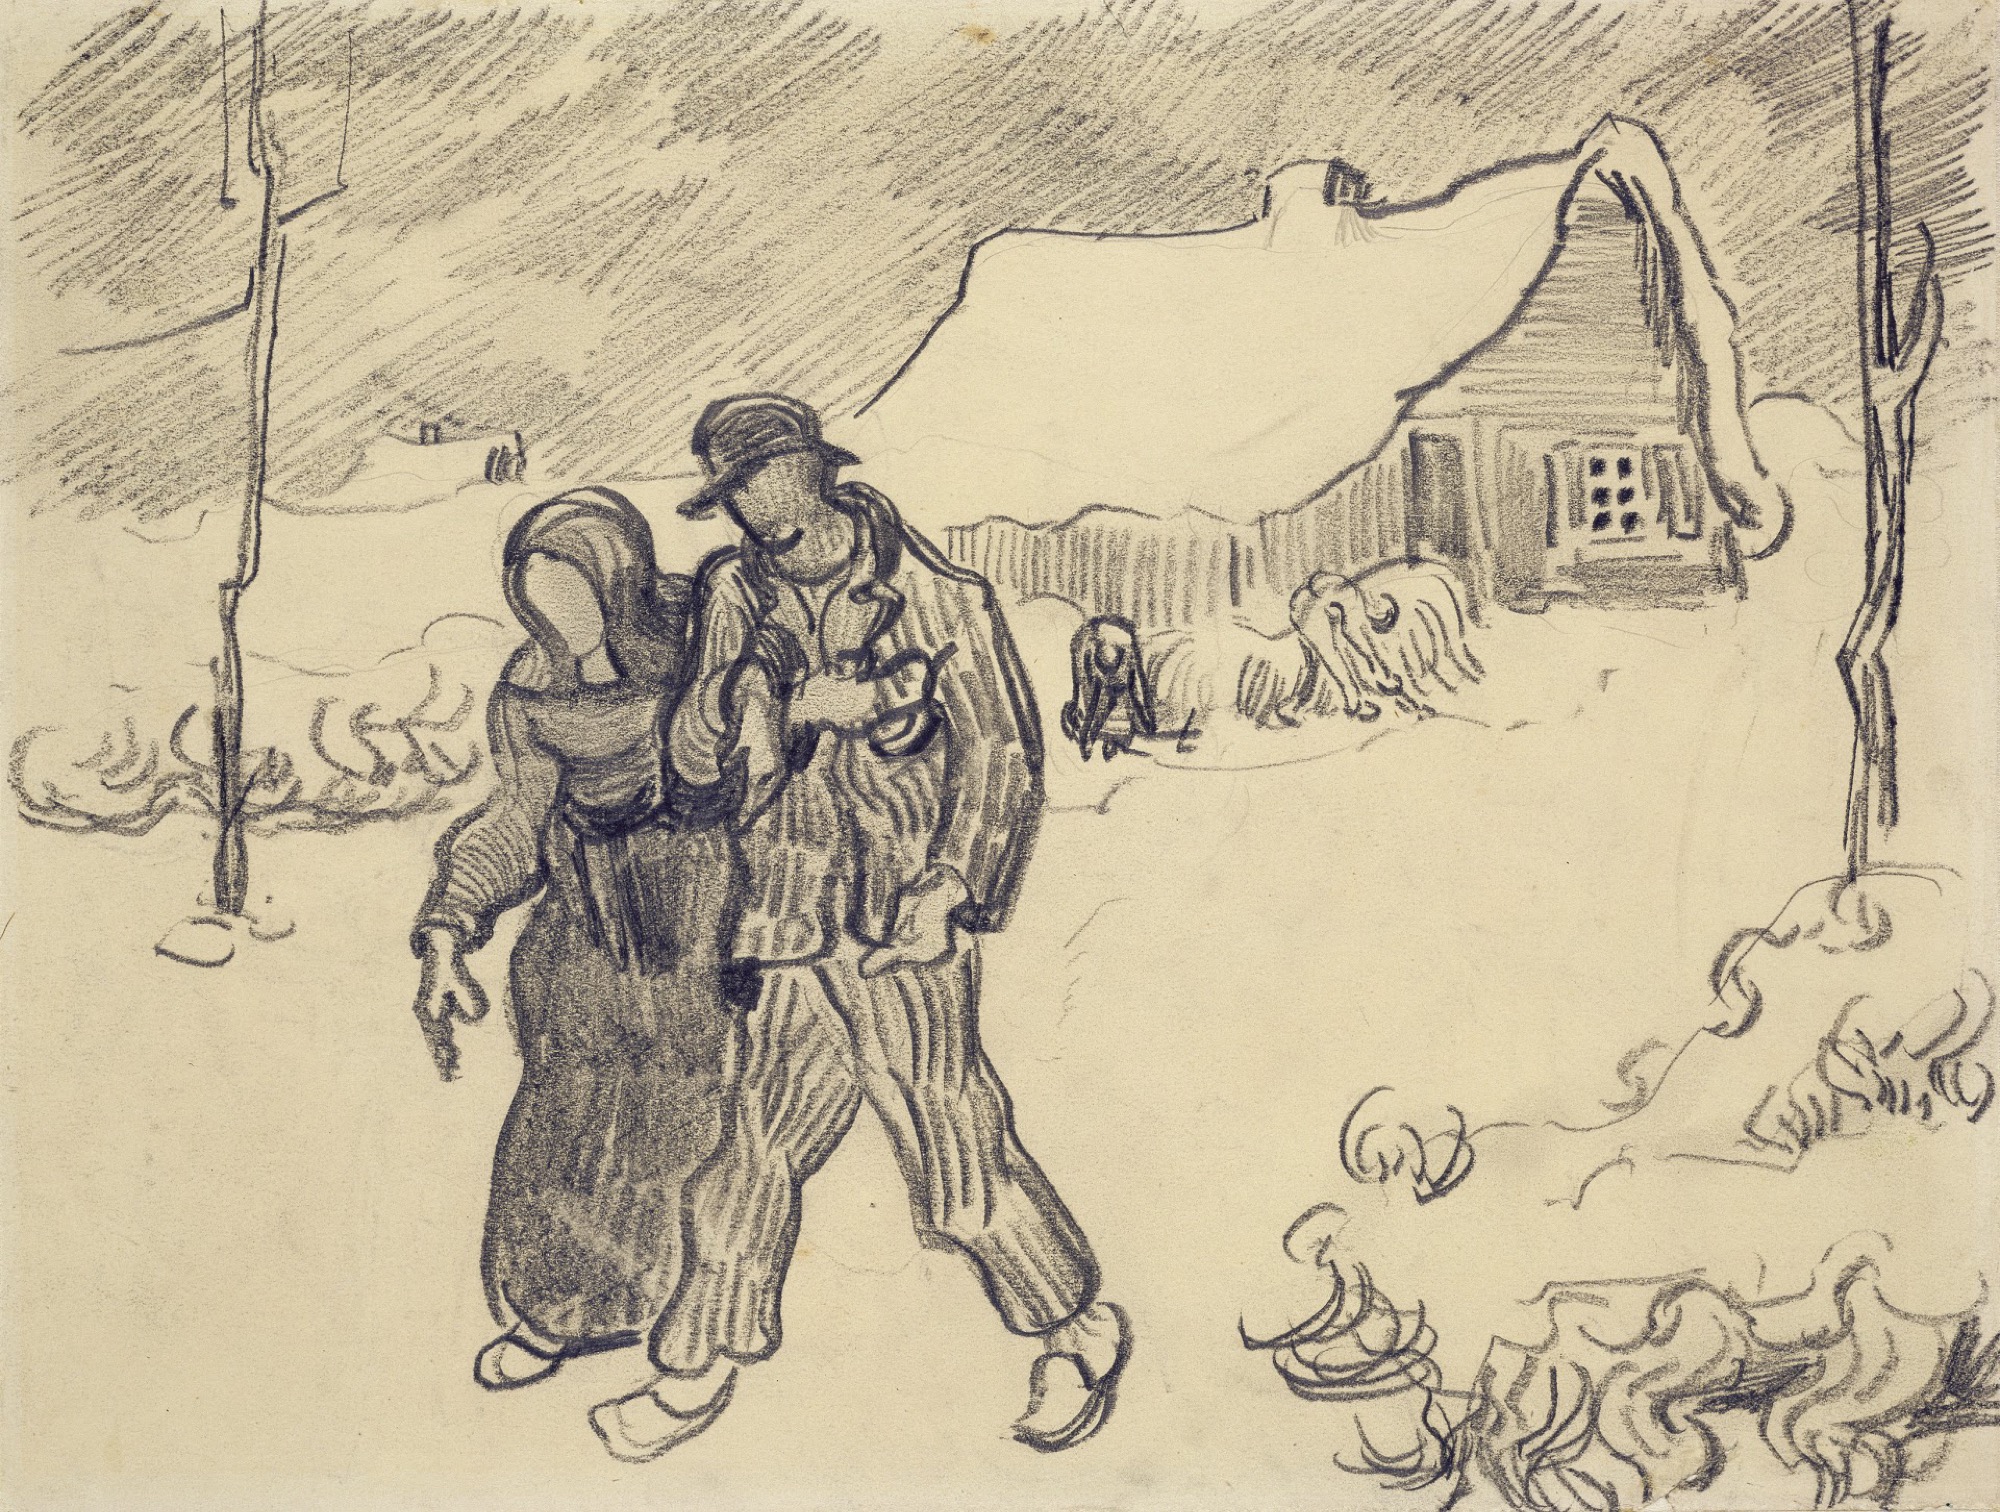 Vincent van Gogh, <em>Winter landscape with couple walking</em>, March - April 1890 Saint-Rémy-de-Provence, pencil on paper, 24 x 32 cm © Van Gogh Museum, Amsterdam